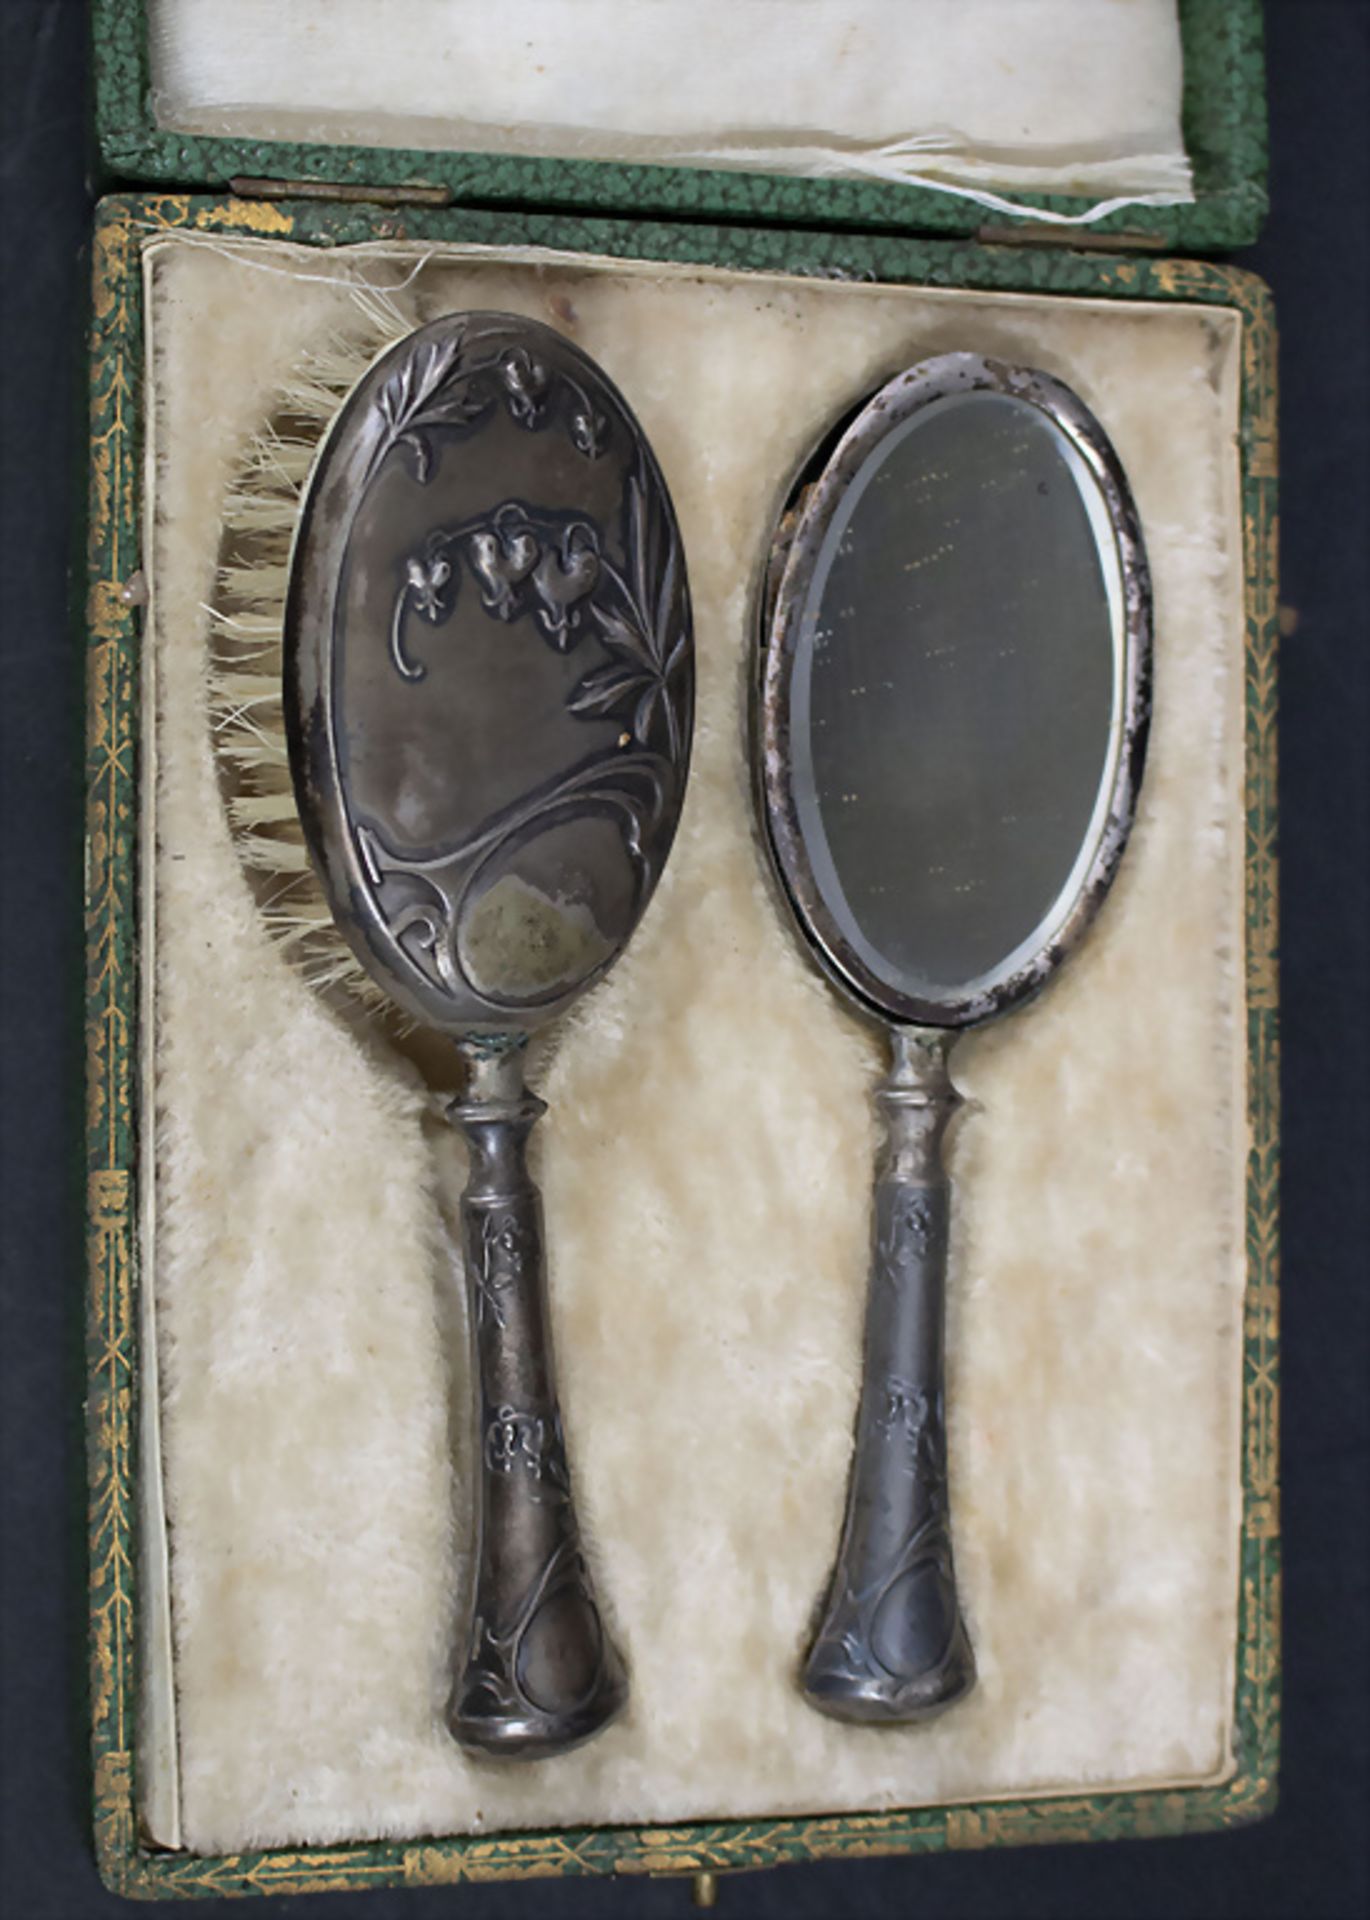 Puppen Jugendstil Handspiegel und Haarbürste im Etui / A doll's Art Nouveau silver mirror and ... - Image 2 of 2